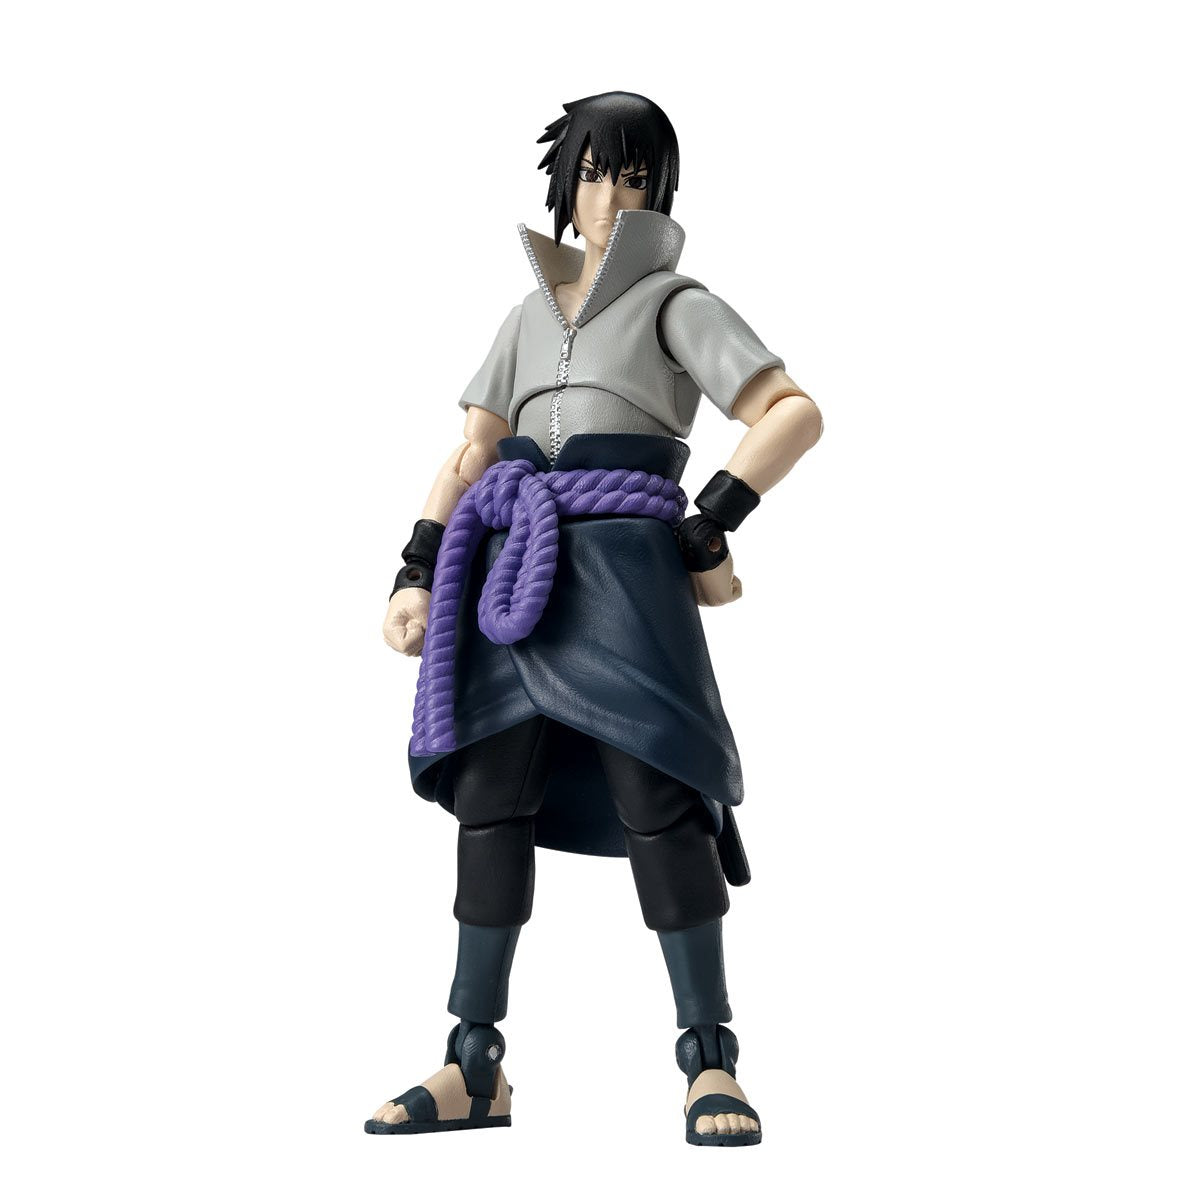 Bandai Ultimate Legends: Naruto Shippuden - Sasuke Uchiha Figura De Accion